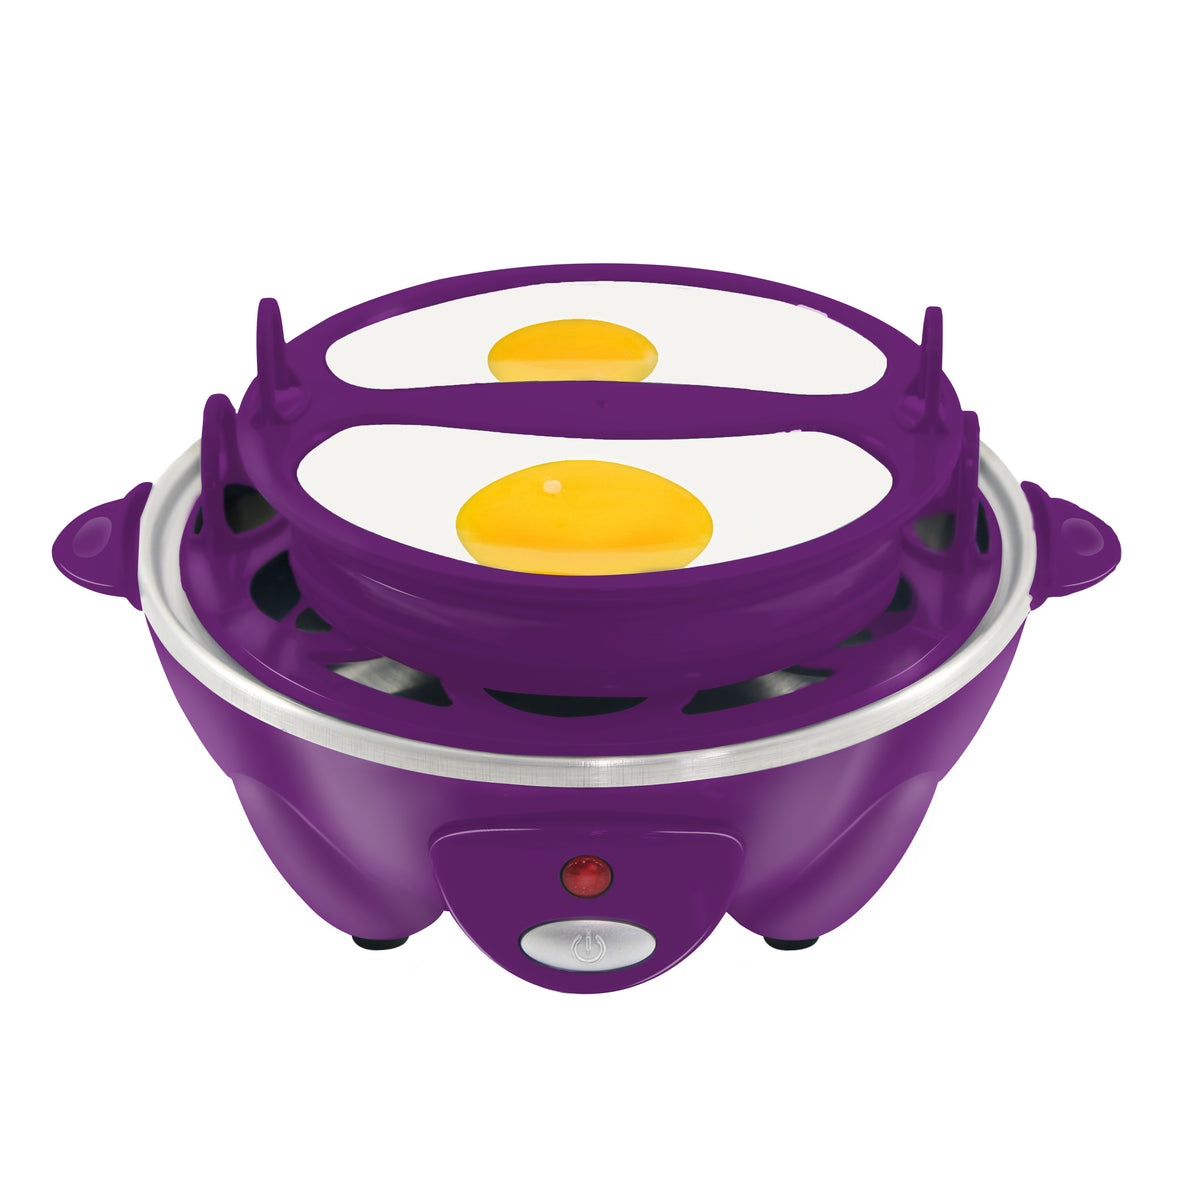 7-Egg Rapid Easy Egg Cooker, Steamer, Poacher (Charcoal)